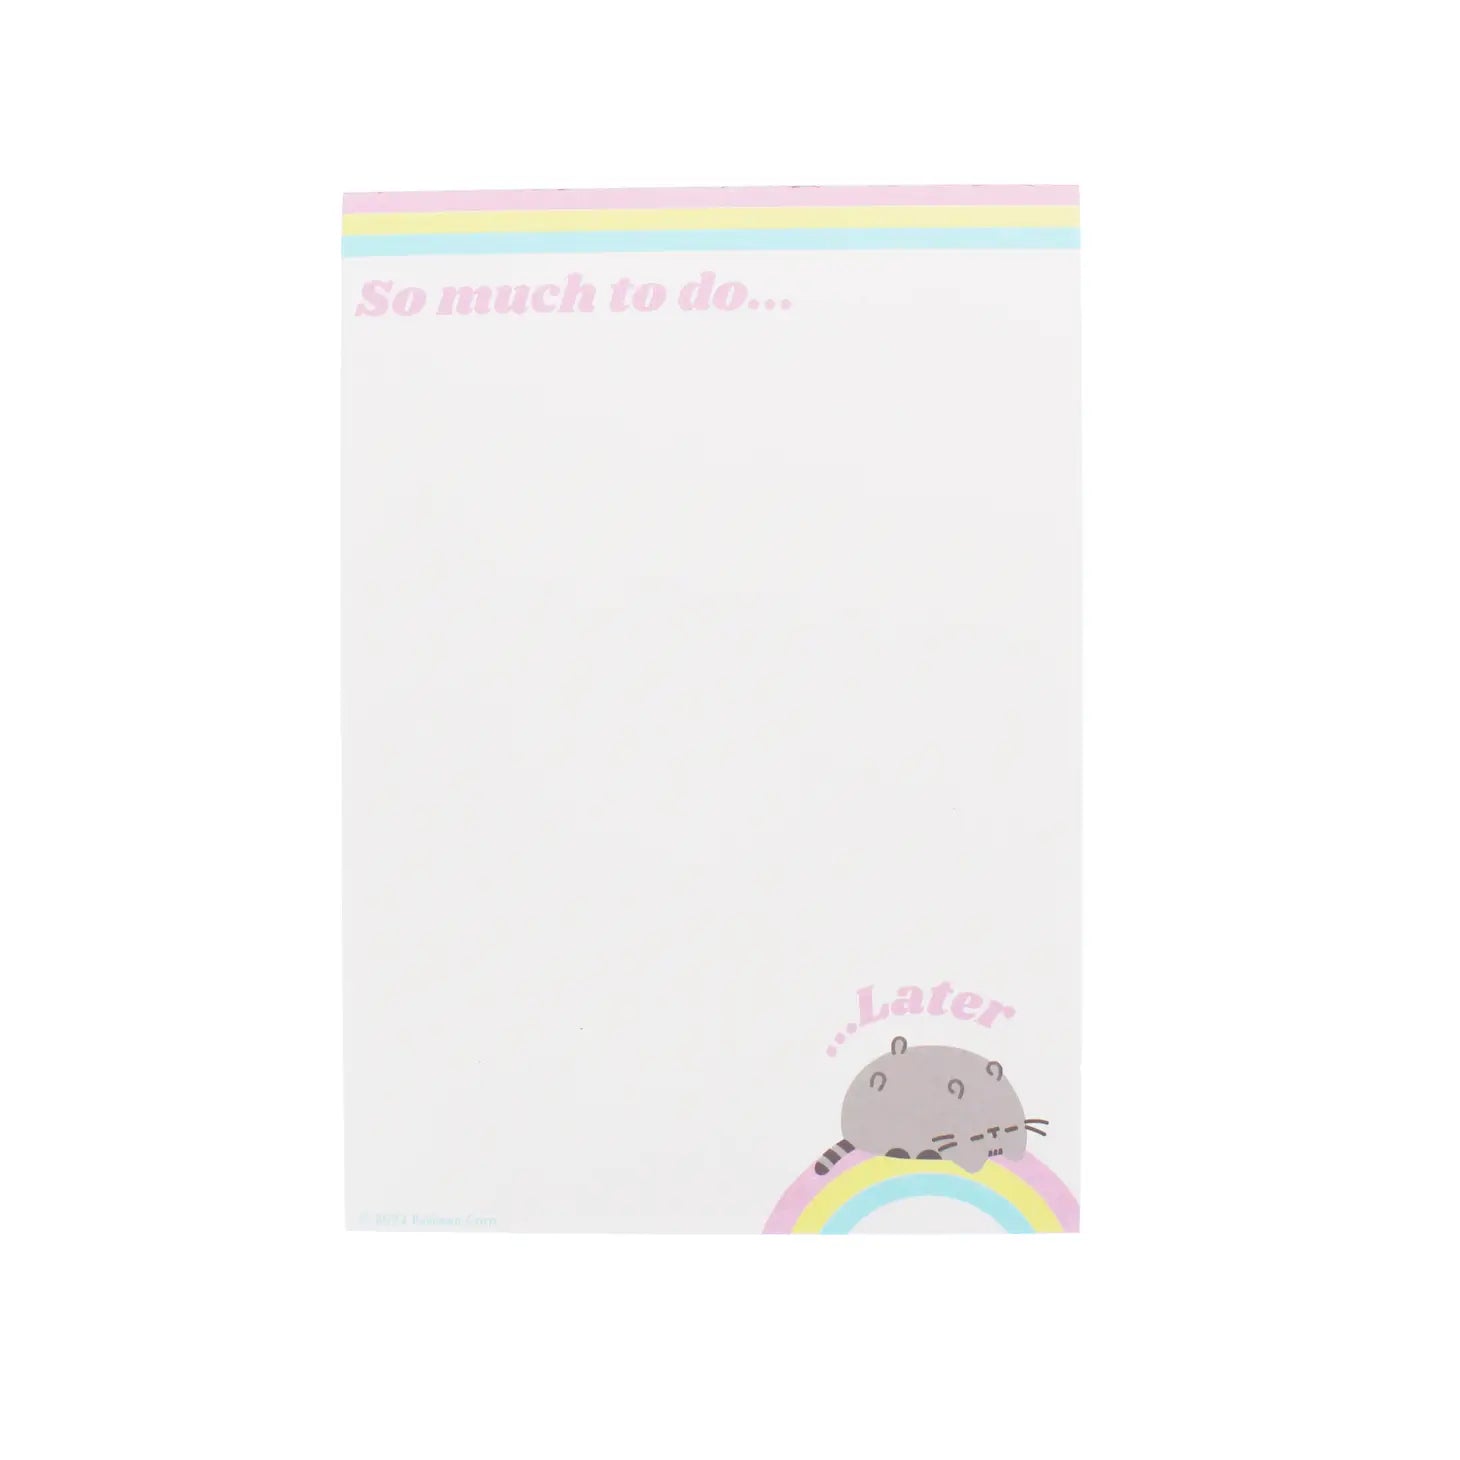 Pusheen Self Care Club Desk Pad note book